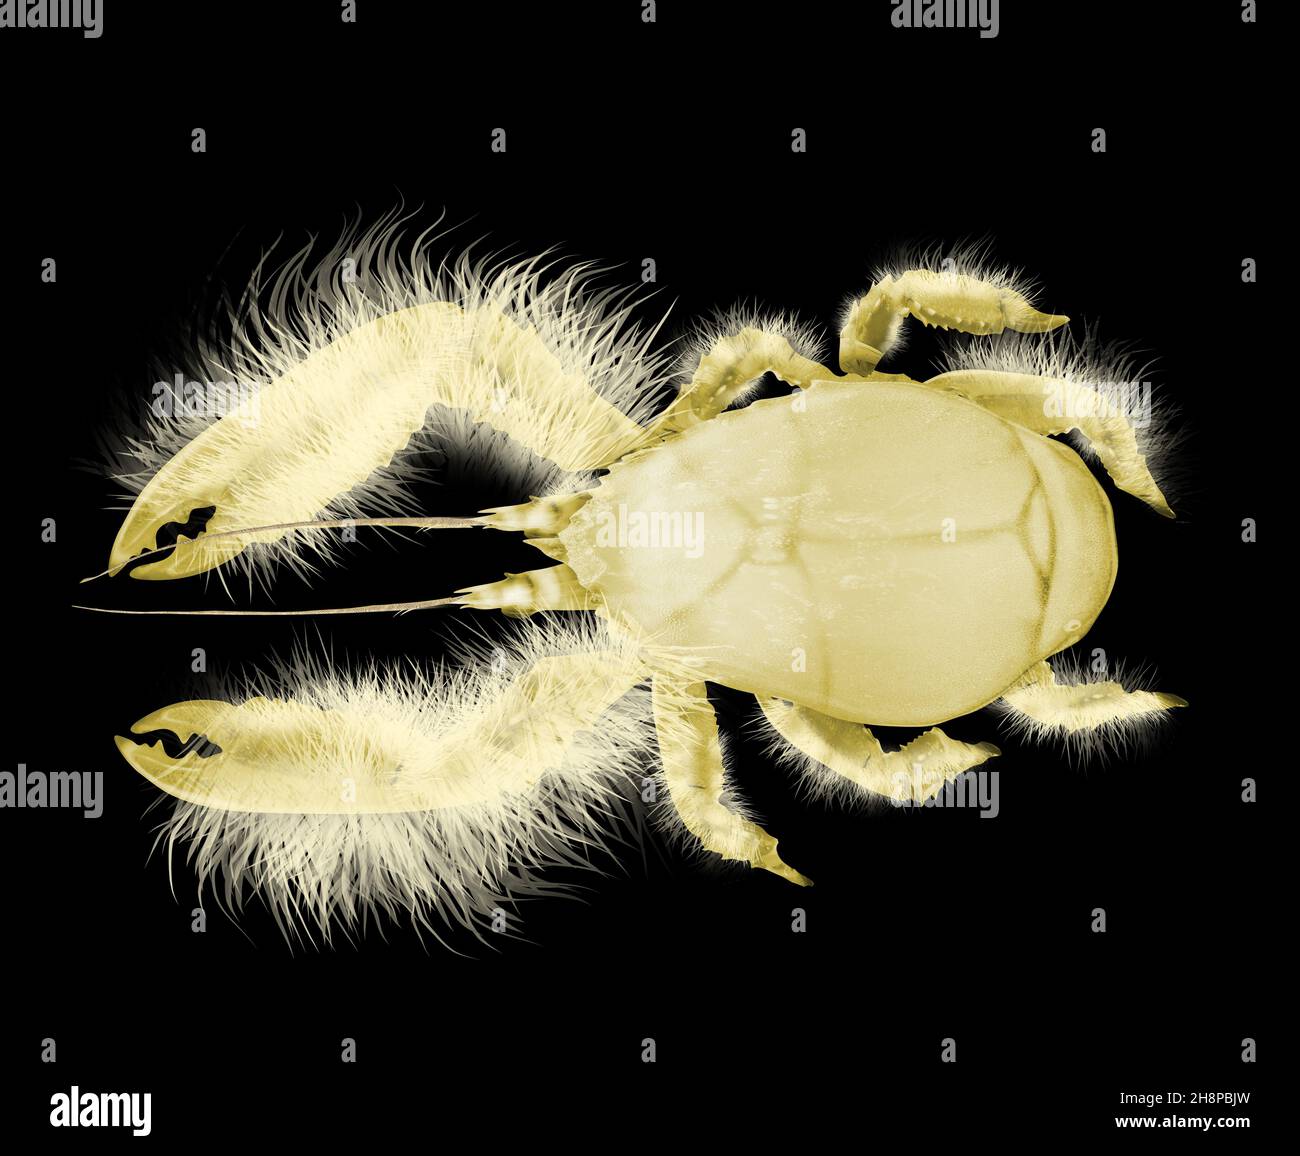 Yeti Krabbe - Kiwa hirsuta. Realistische Details. Weiße Krabbe mit haarigen Körper. Tiefseegeschöpf. Stockfoto